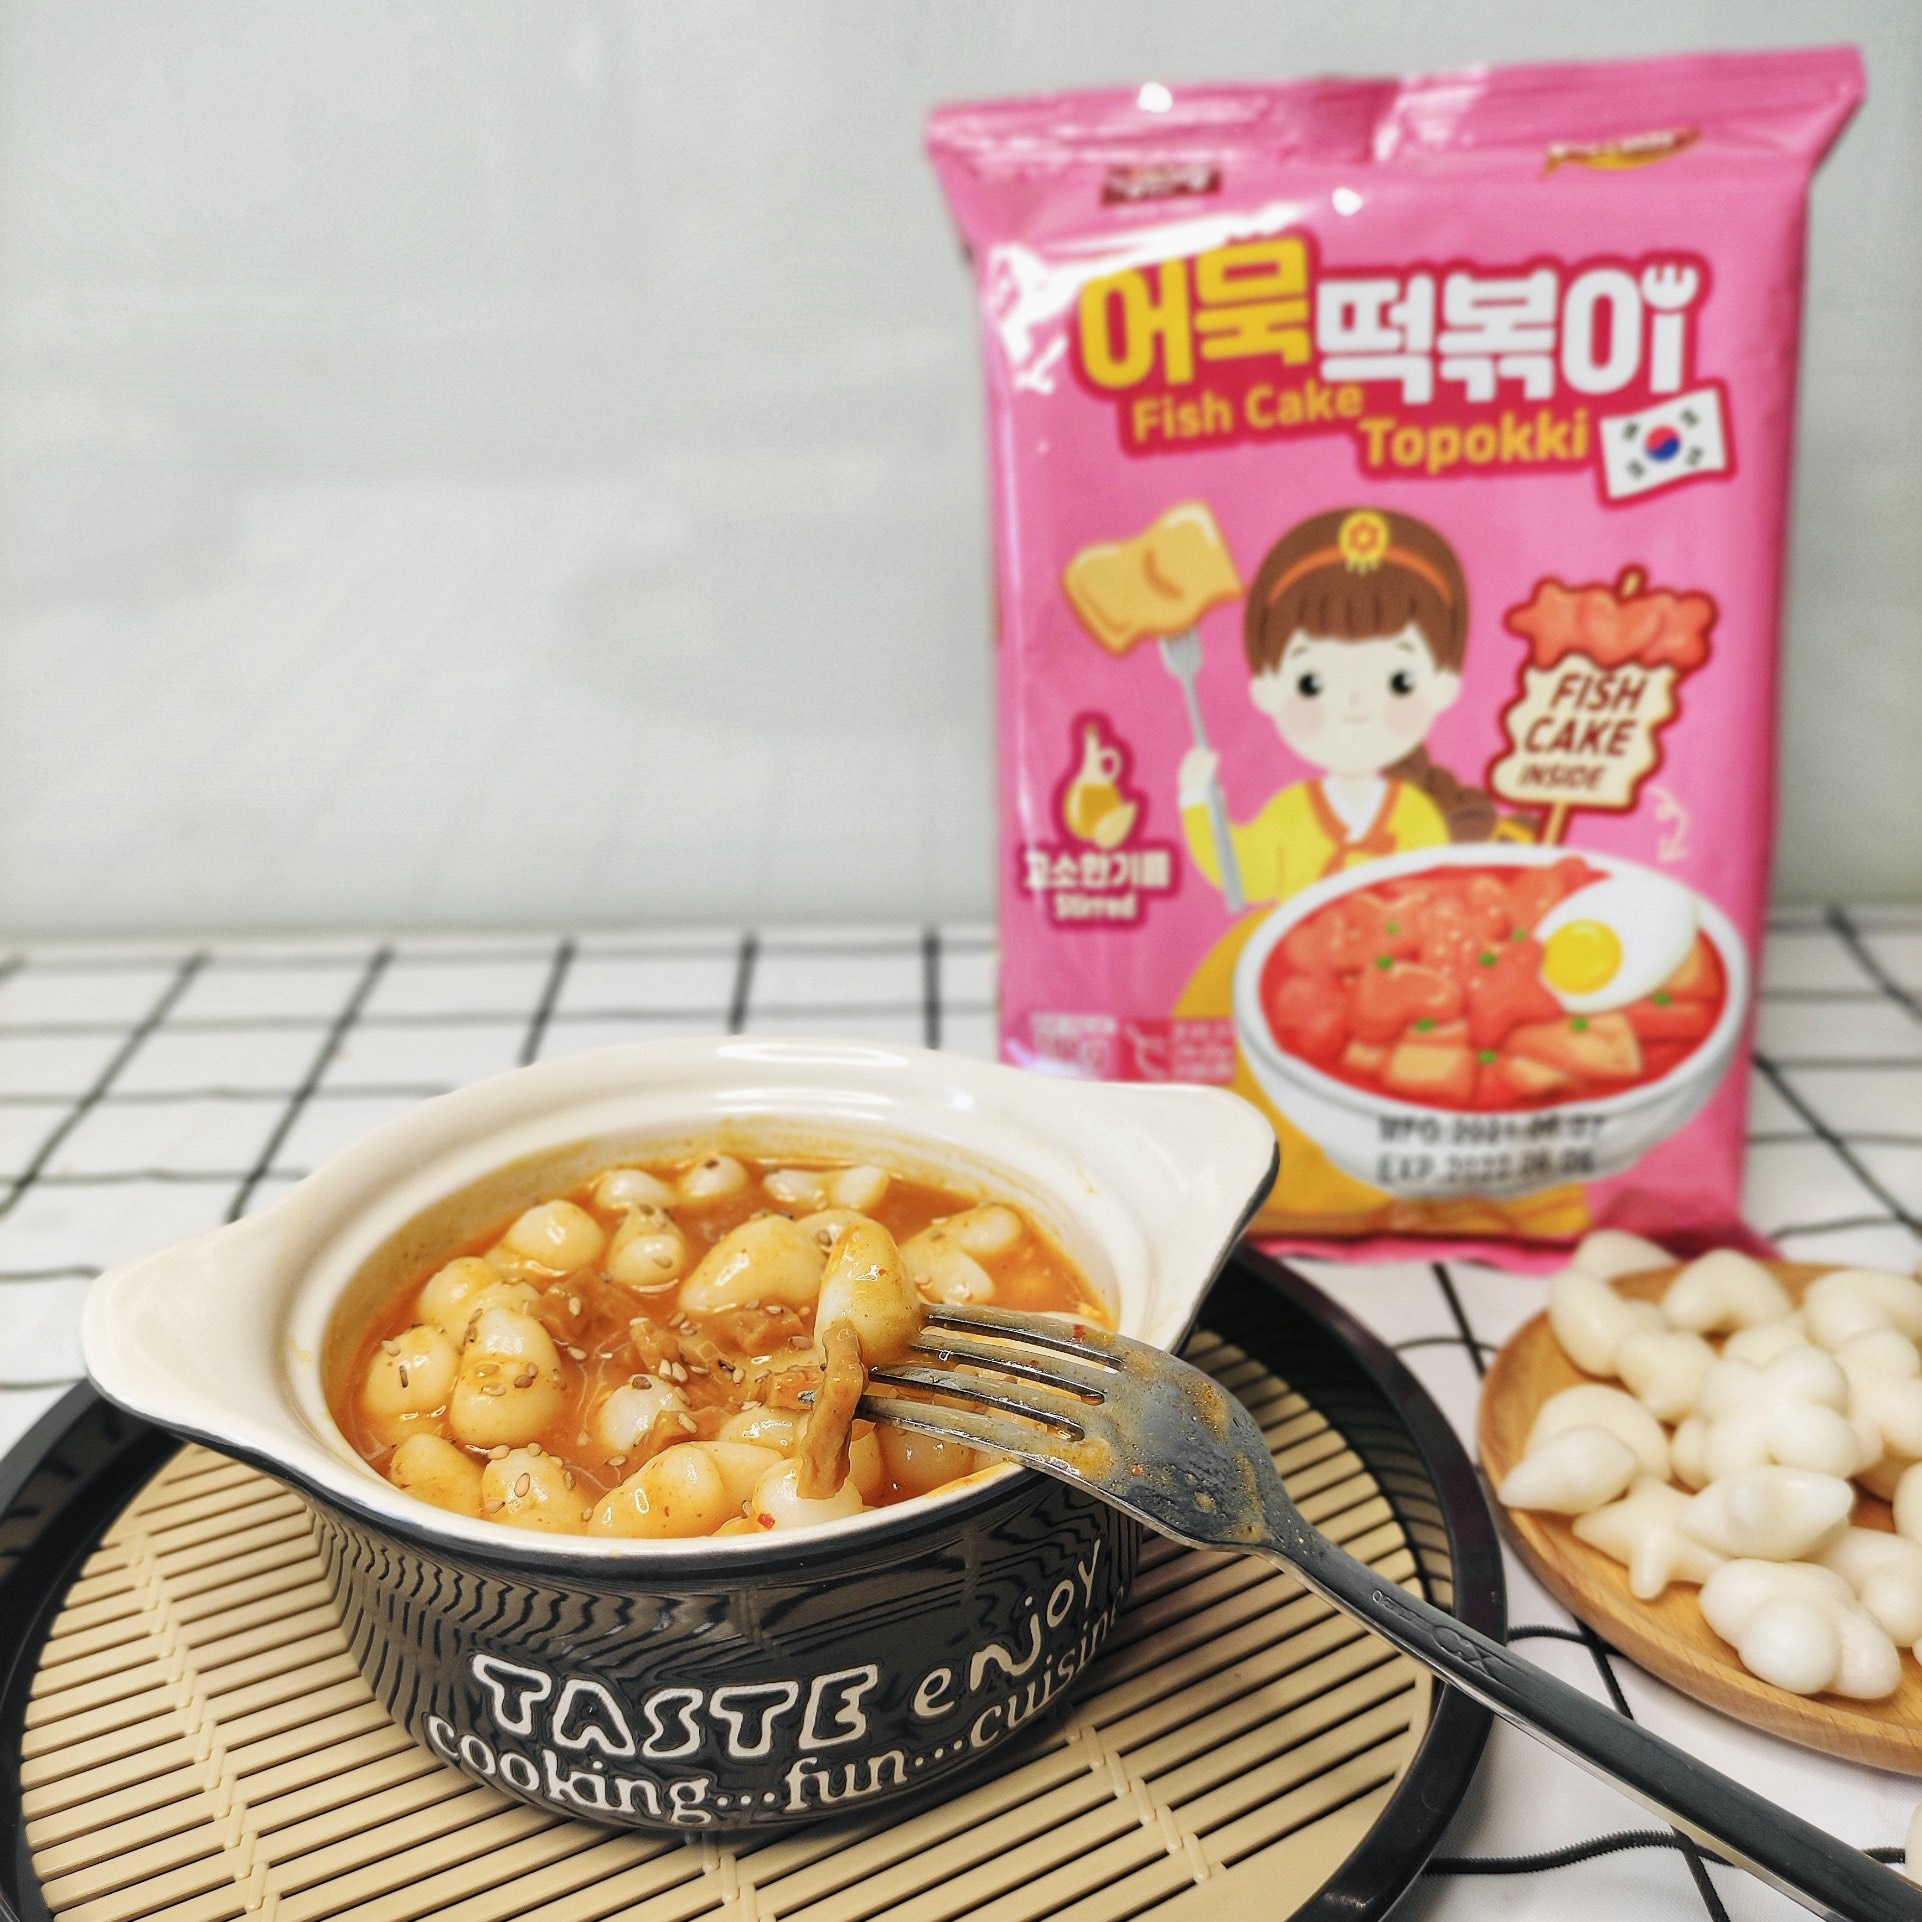 Bánh Gạo Topokki Hàn Quốc Chả Cá - Hình Hoa Sao Tim - Vị Dầu Mè